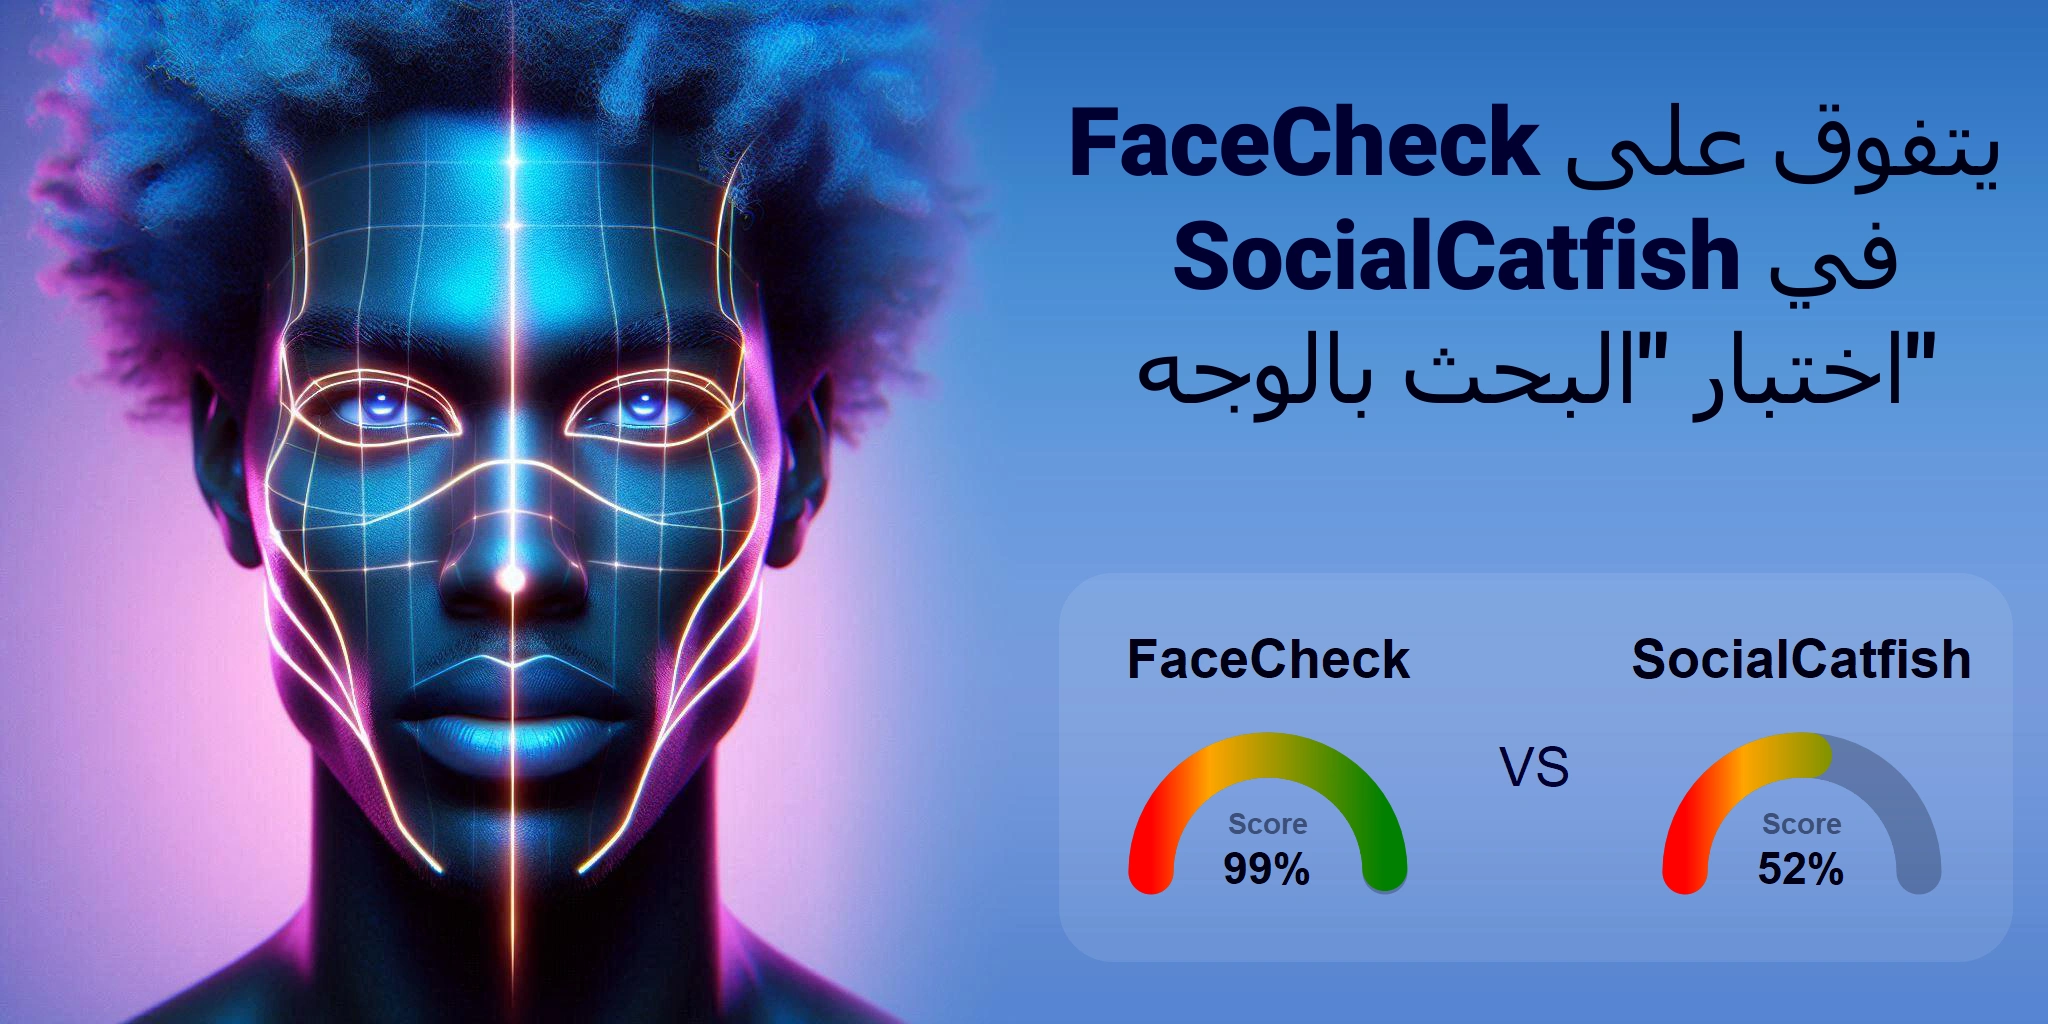 ما هو الأفضل للبحث بالوجه: <br>FaceCheck أو SocialCatfish؟